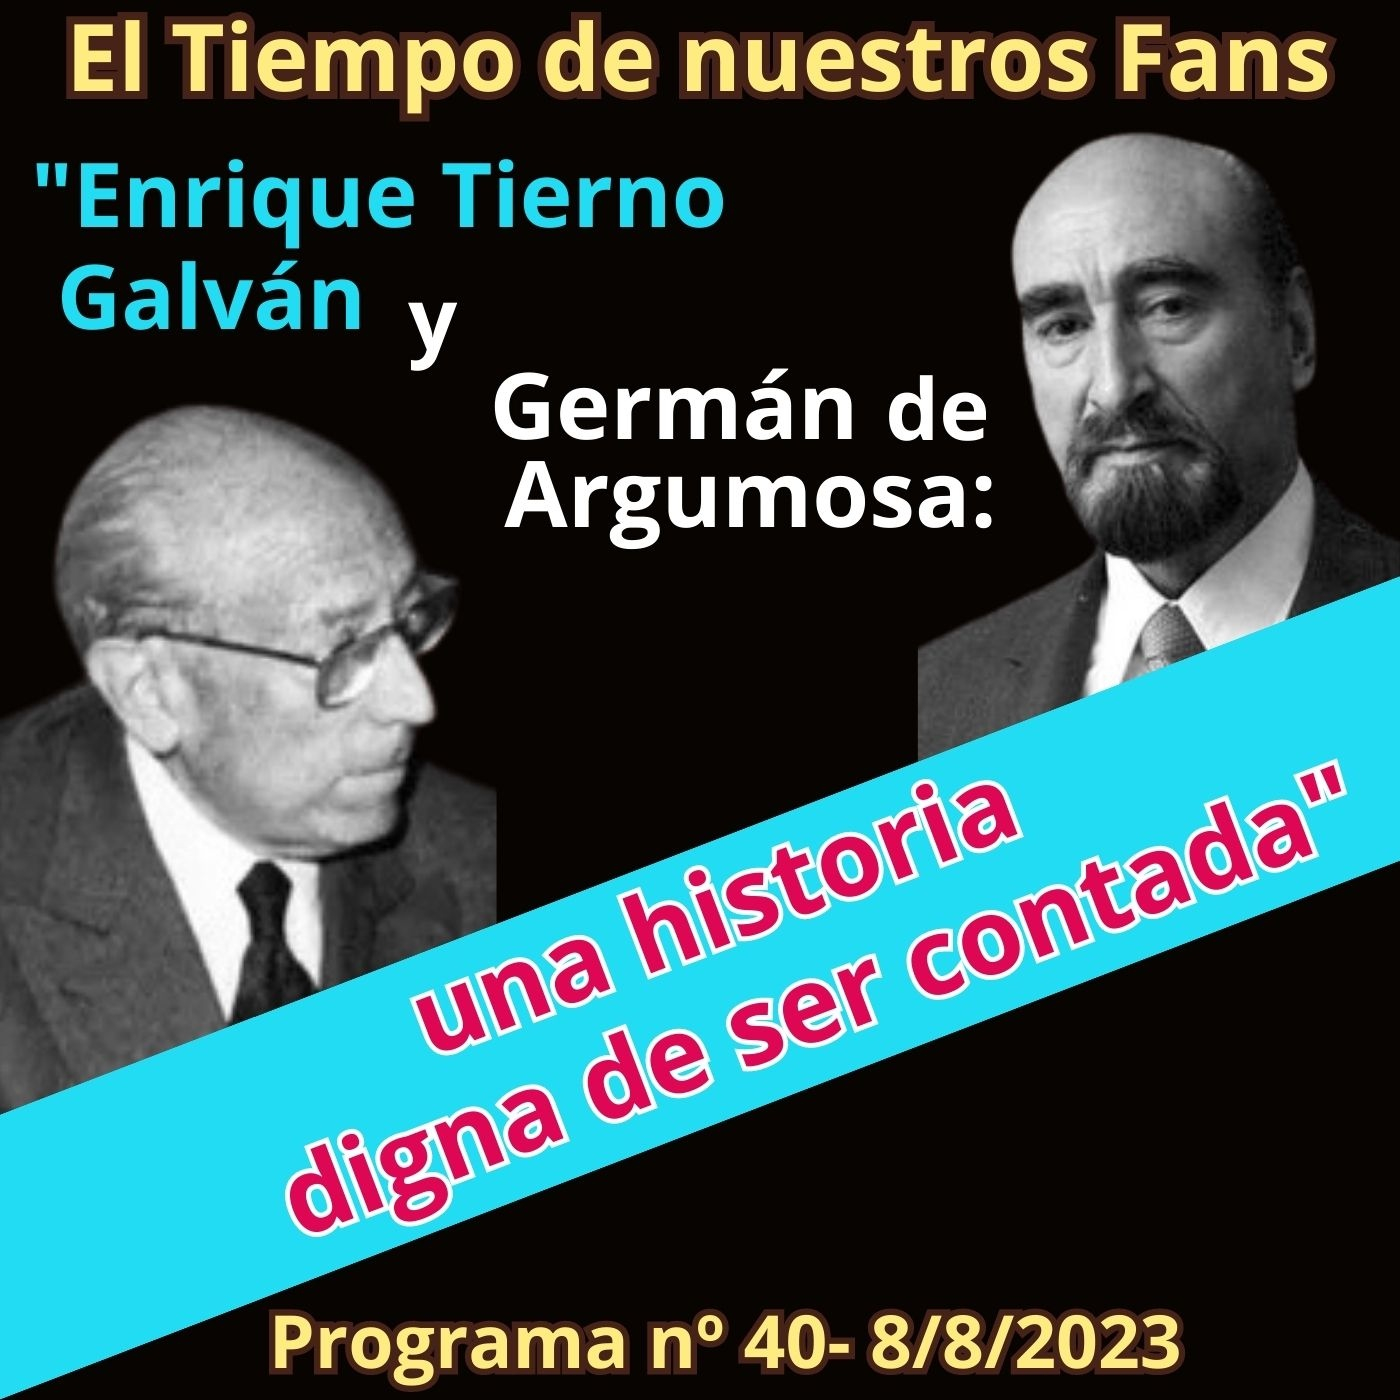 Enrique Tierno Galván y Germán de Argumosa: Una historia digna de ser contada -El Tiempo de nuestr@s Fans - P40 - 8/8/23 - Episodio exclusivo para mecenas